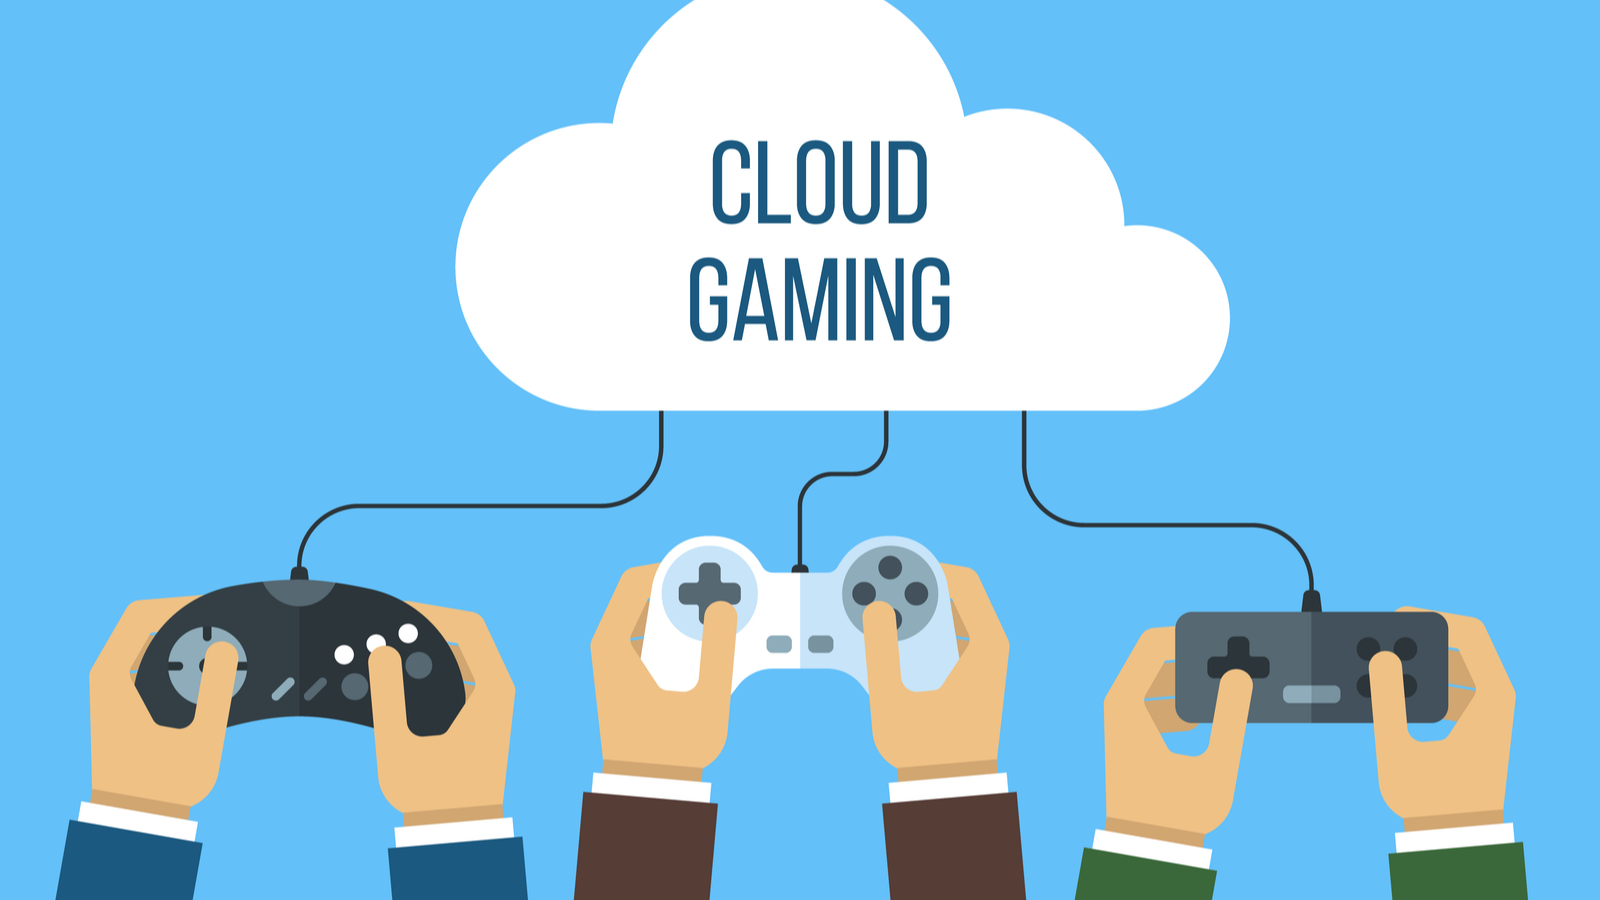 Cloud gaming : est-ce l'avenir du jeu vidéo selon vous ?